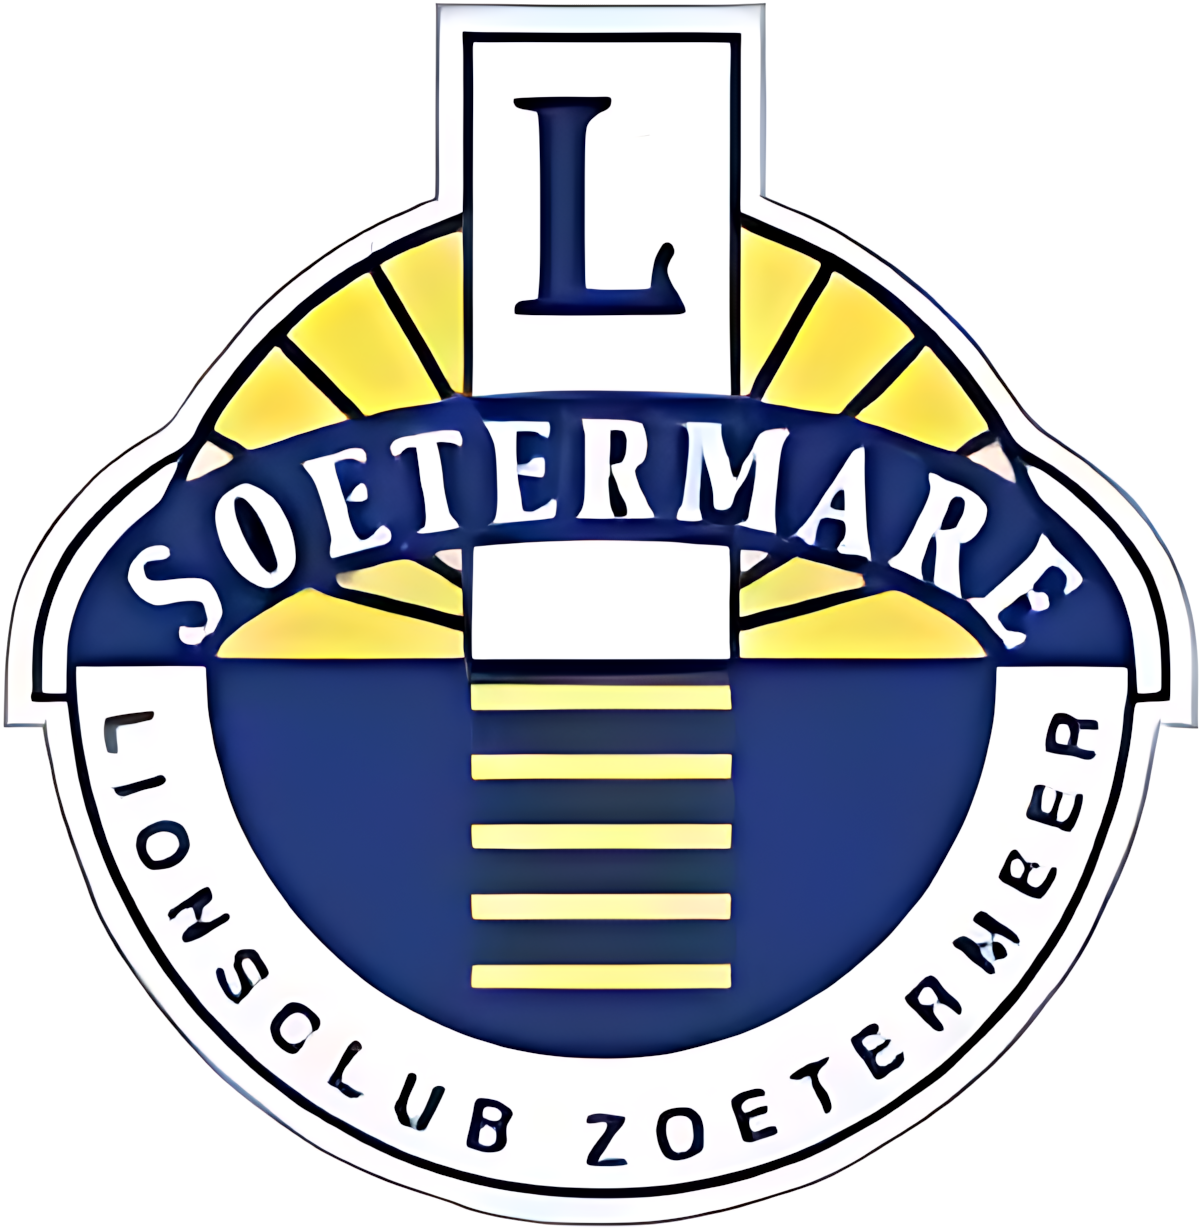 Logo Lionsclub Soetermare Zoetermeer